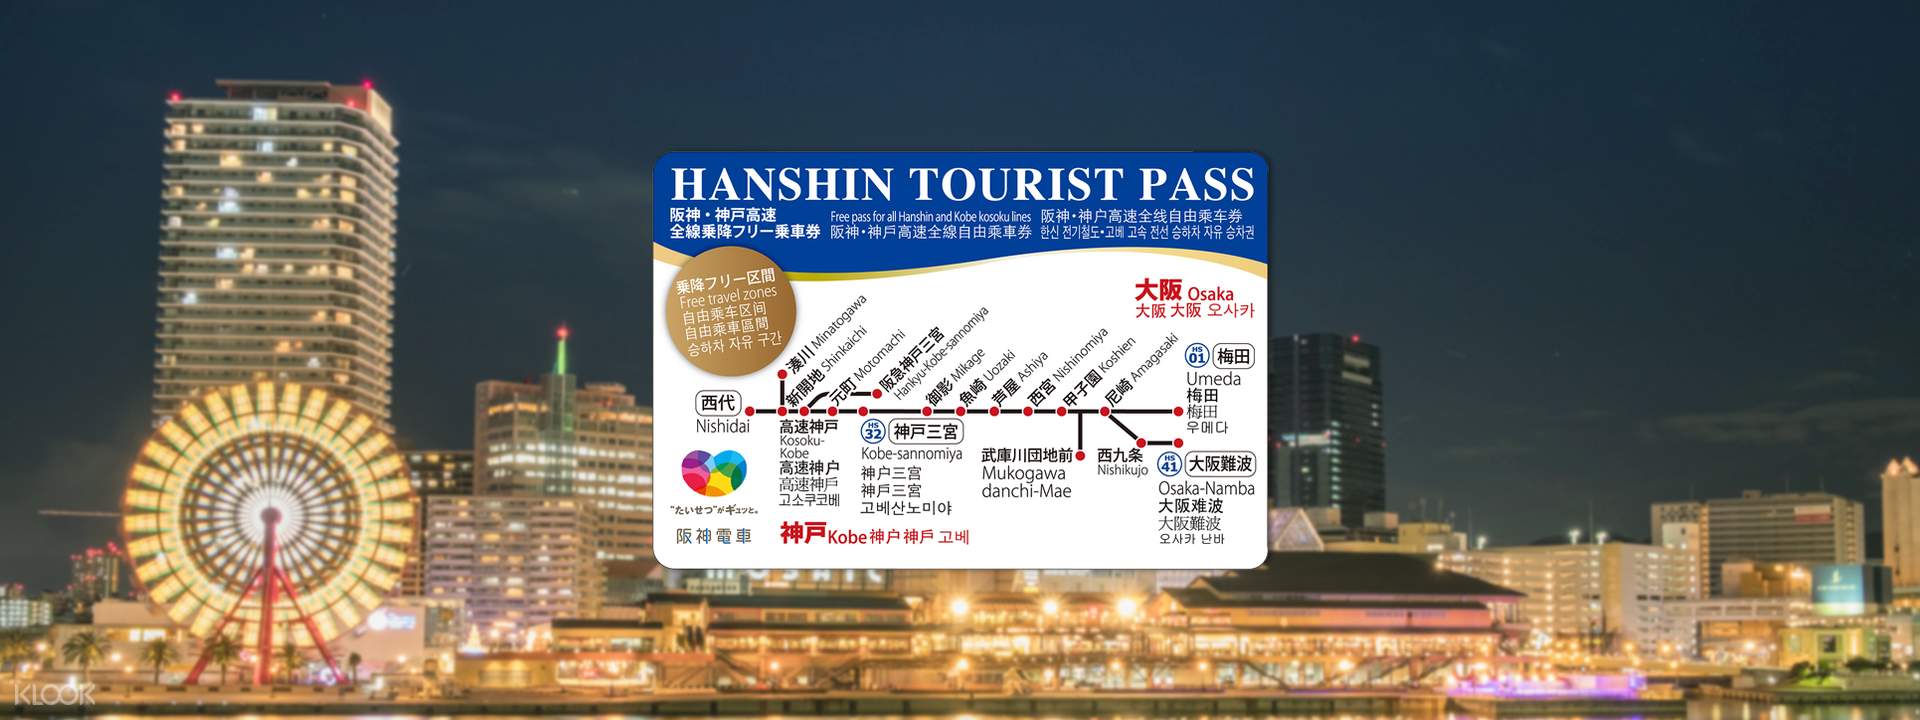 hanshin tourist pass 1 day